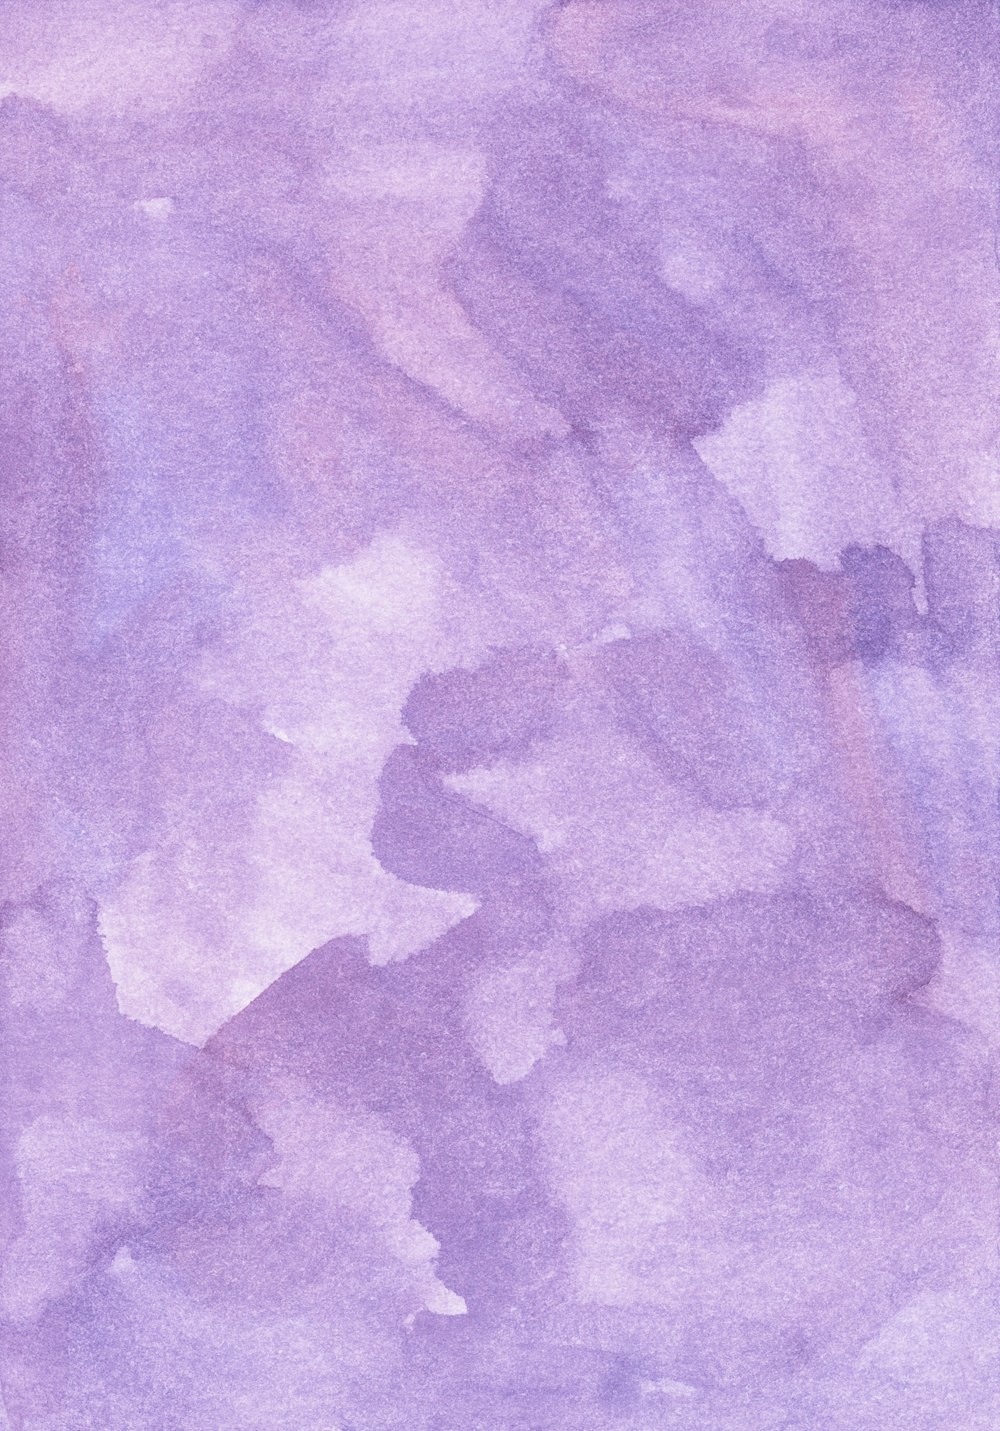 Una acuarela de fondo púrpura